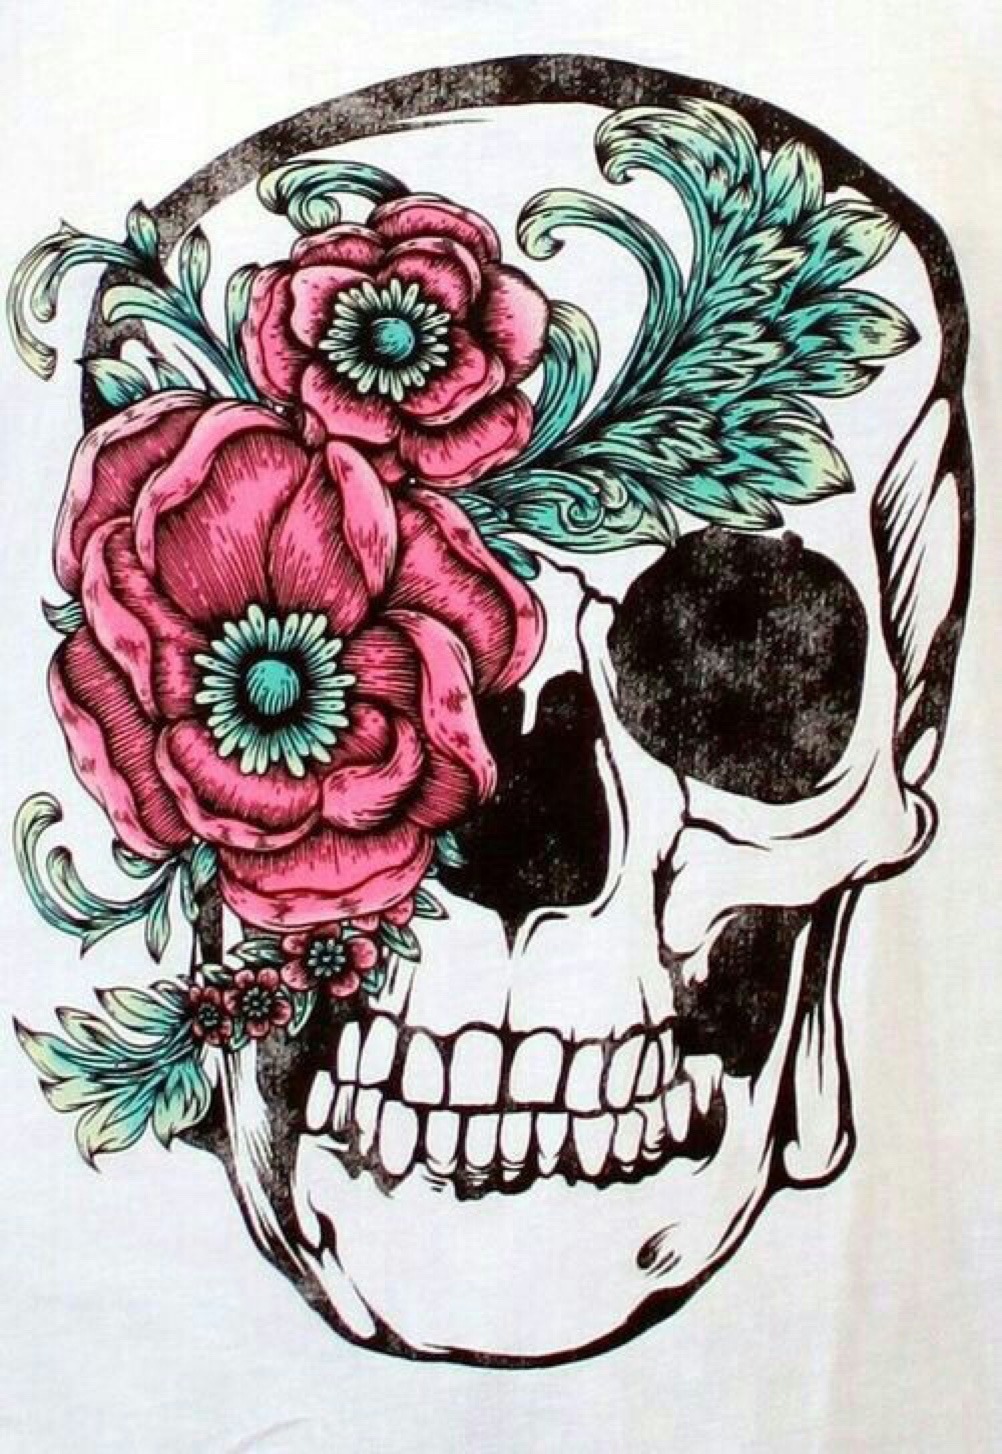 Cute girly skull tattoo drawings